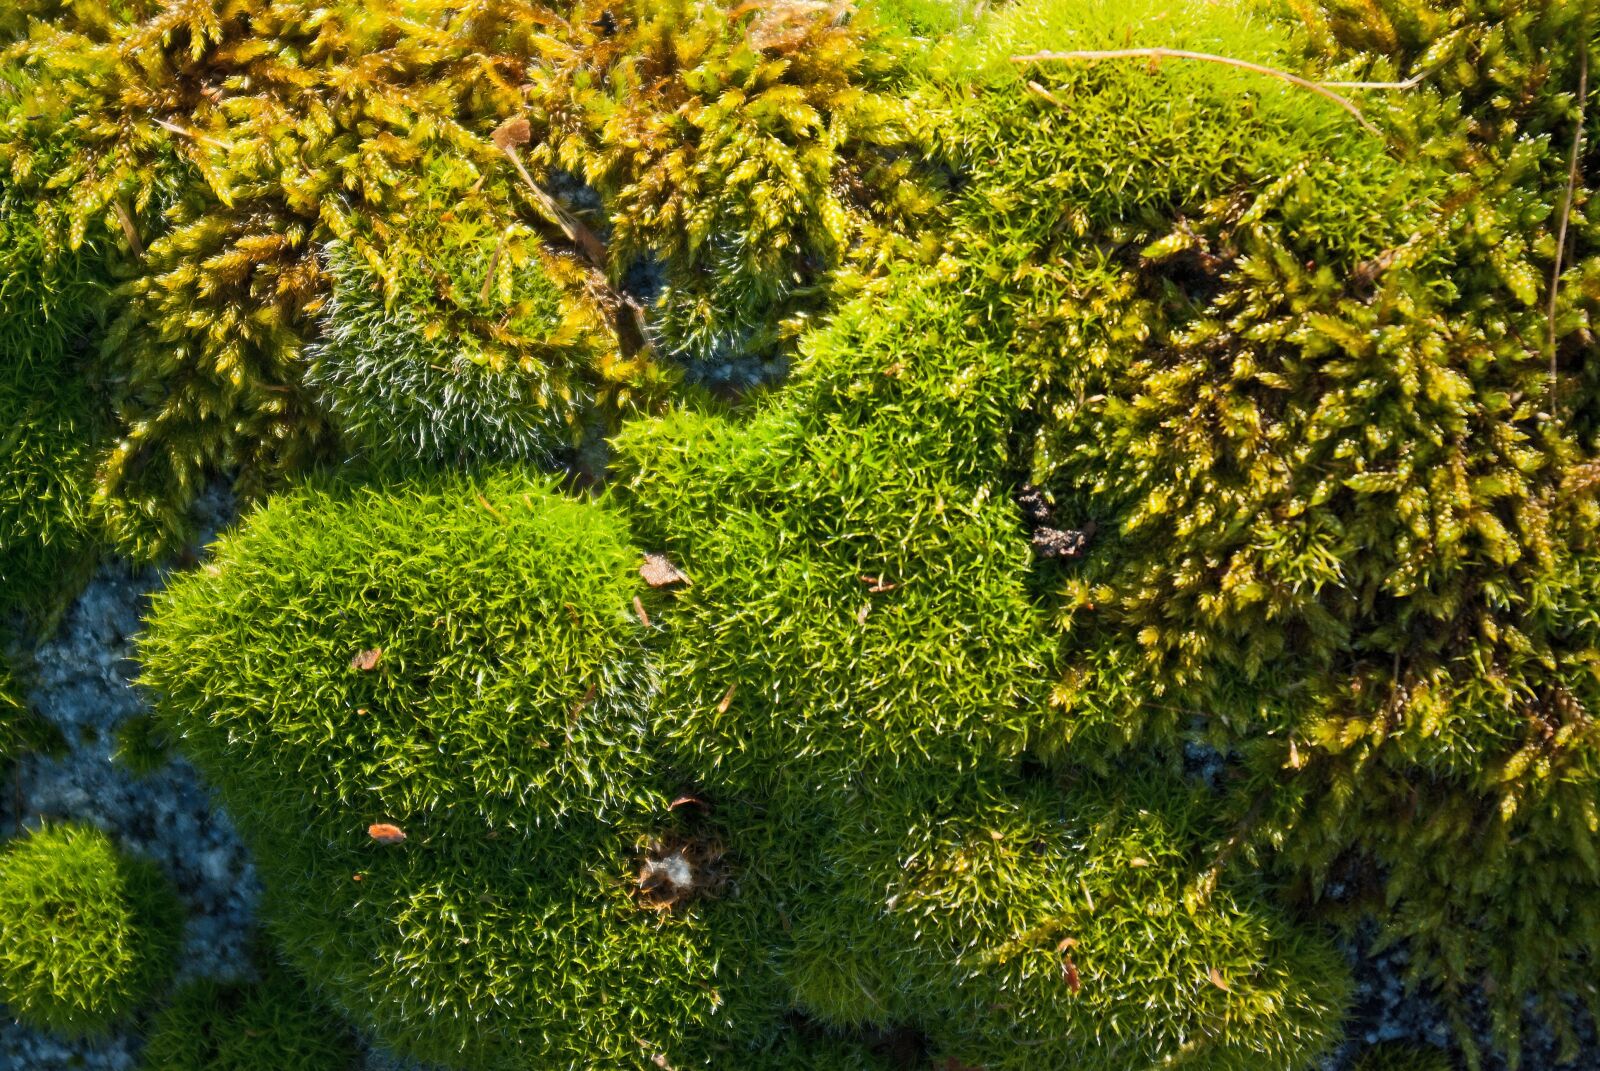 Pentax K10D sample photo. Lichen, moss, nature photography